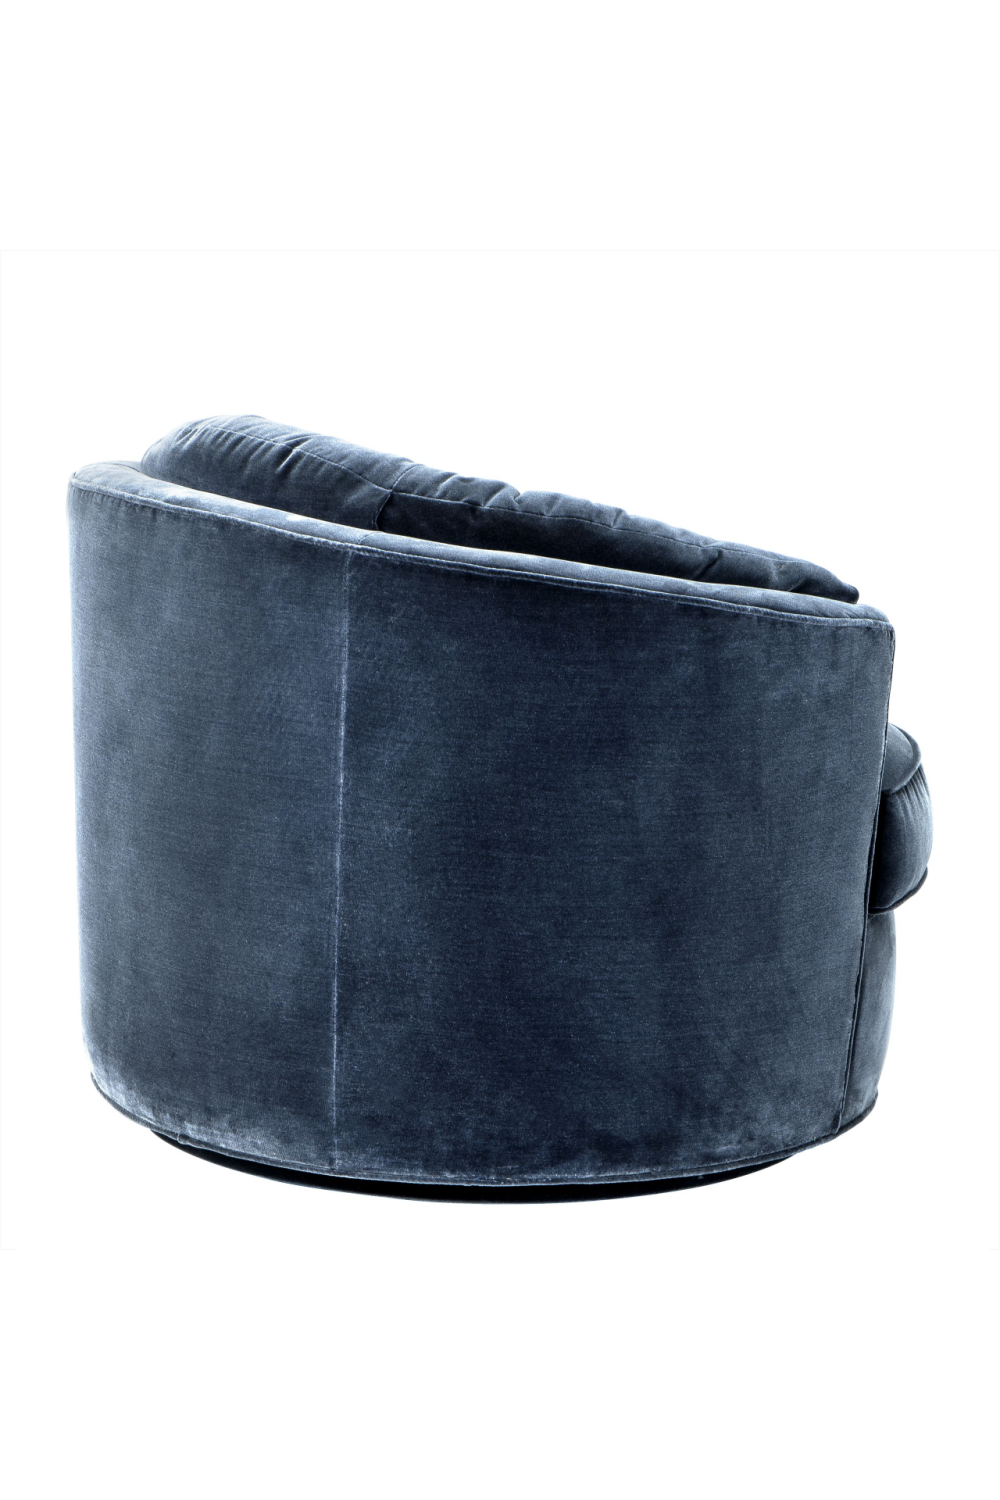 Blue Velvet Swivel Chair | Eichholtz Recla | Oroa.com